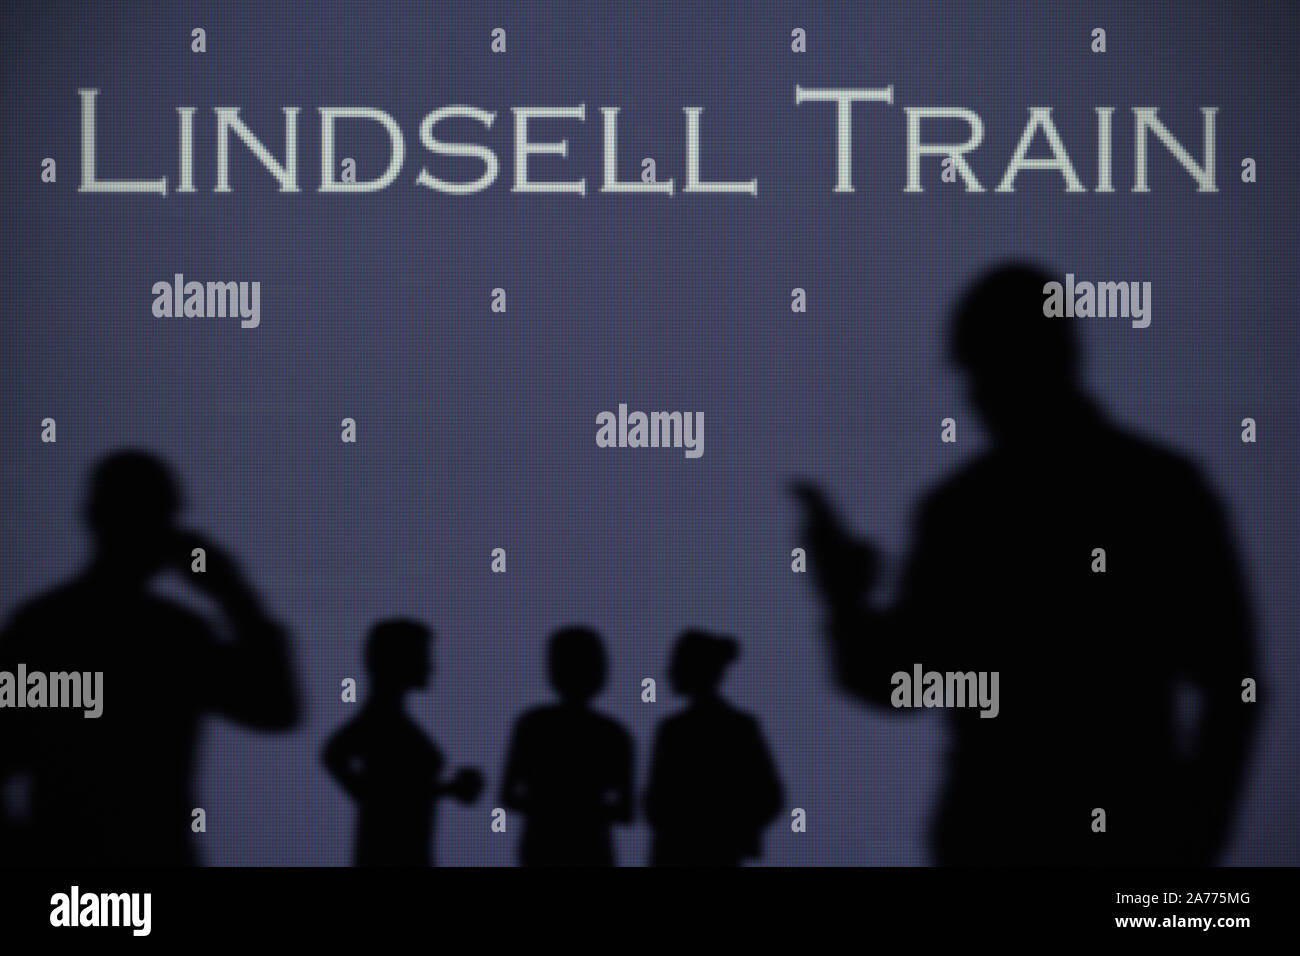 Die lindsell Zug Logo ist auf einen LED-Bildschirm im Hintergrund, während eine Silhouette Person ein Smartphone verwendet (nur redaktionelle Nutzung) Stockfoto